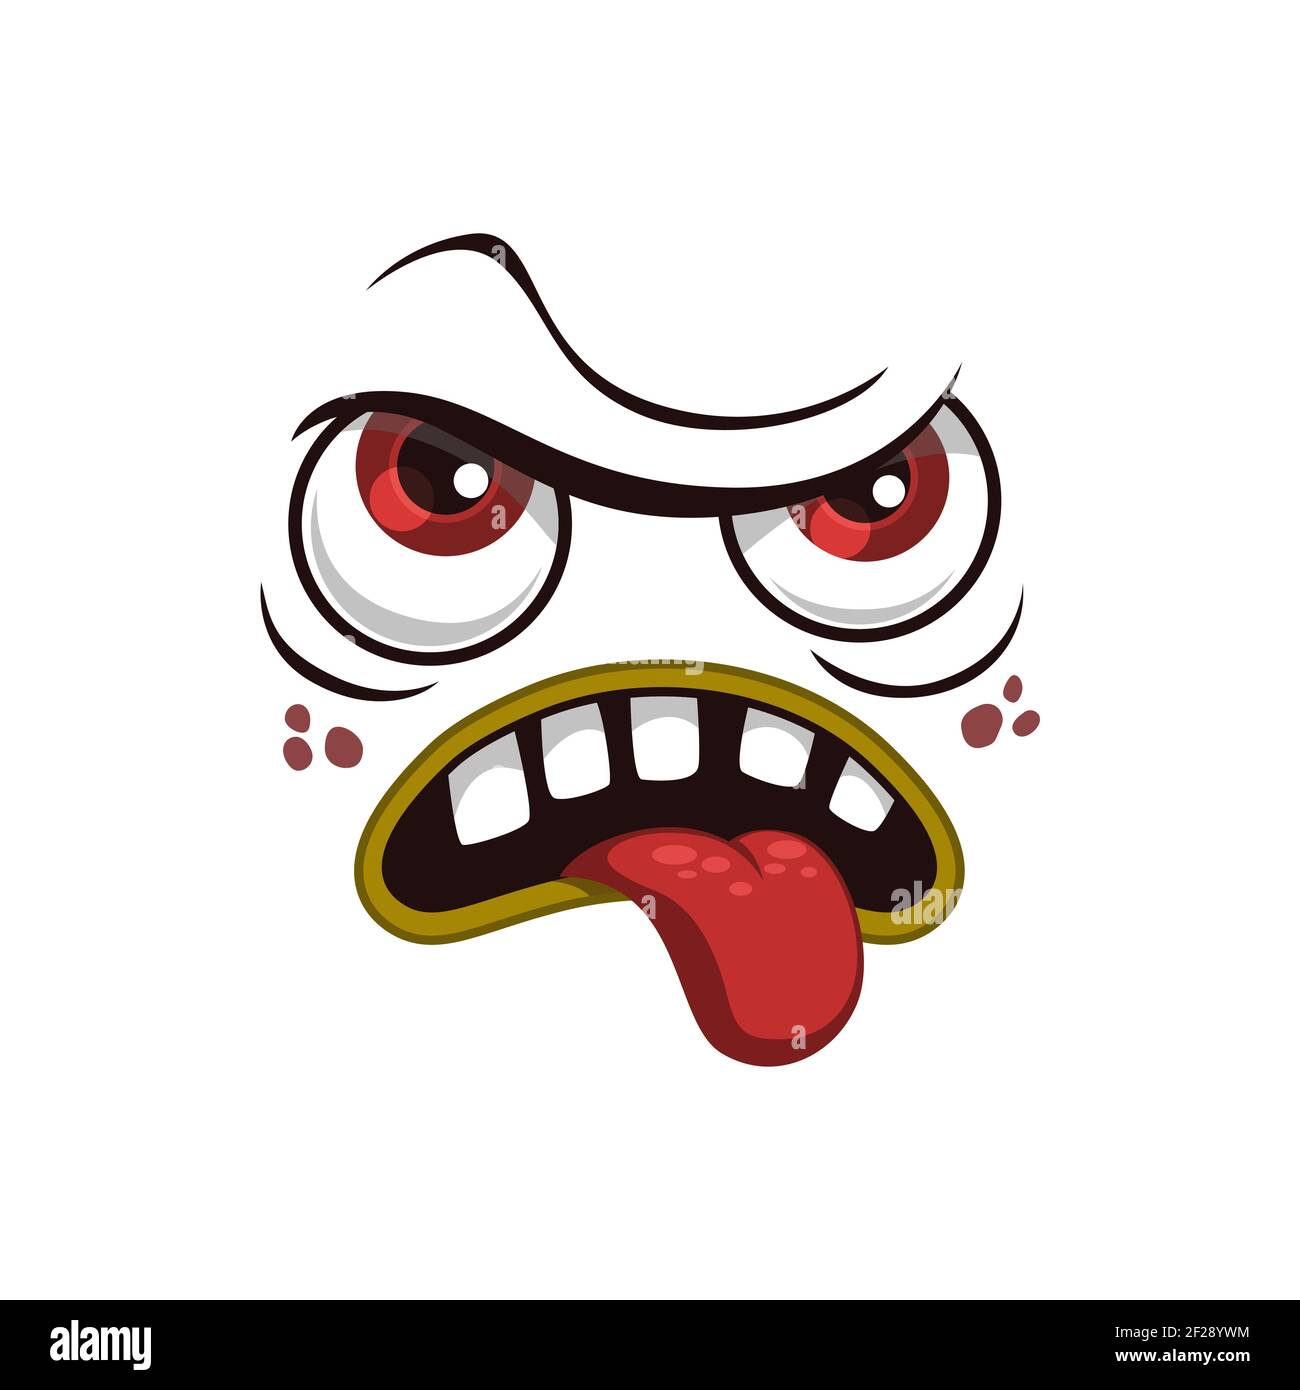 Personnage de dessin animé icône de vecteur isolé, émotion fatigué, démoli monstre Halloween drôle créature avec les yeux rouges et coller la langue dans la bouche touffue, malheureux Illustration de Vecteur